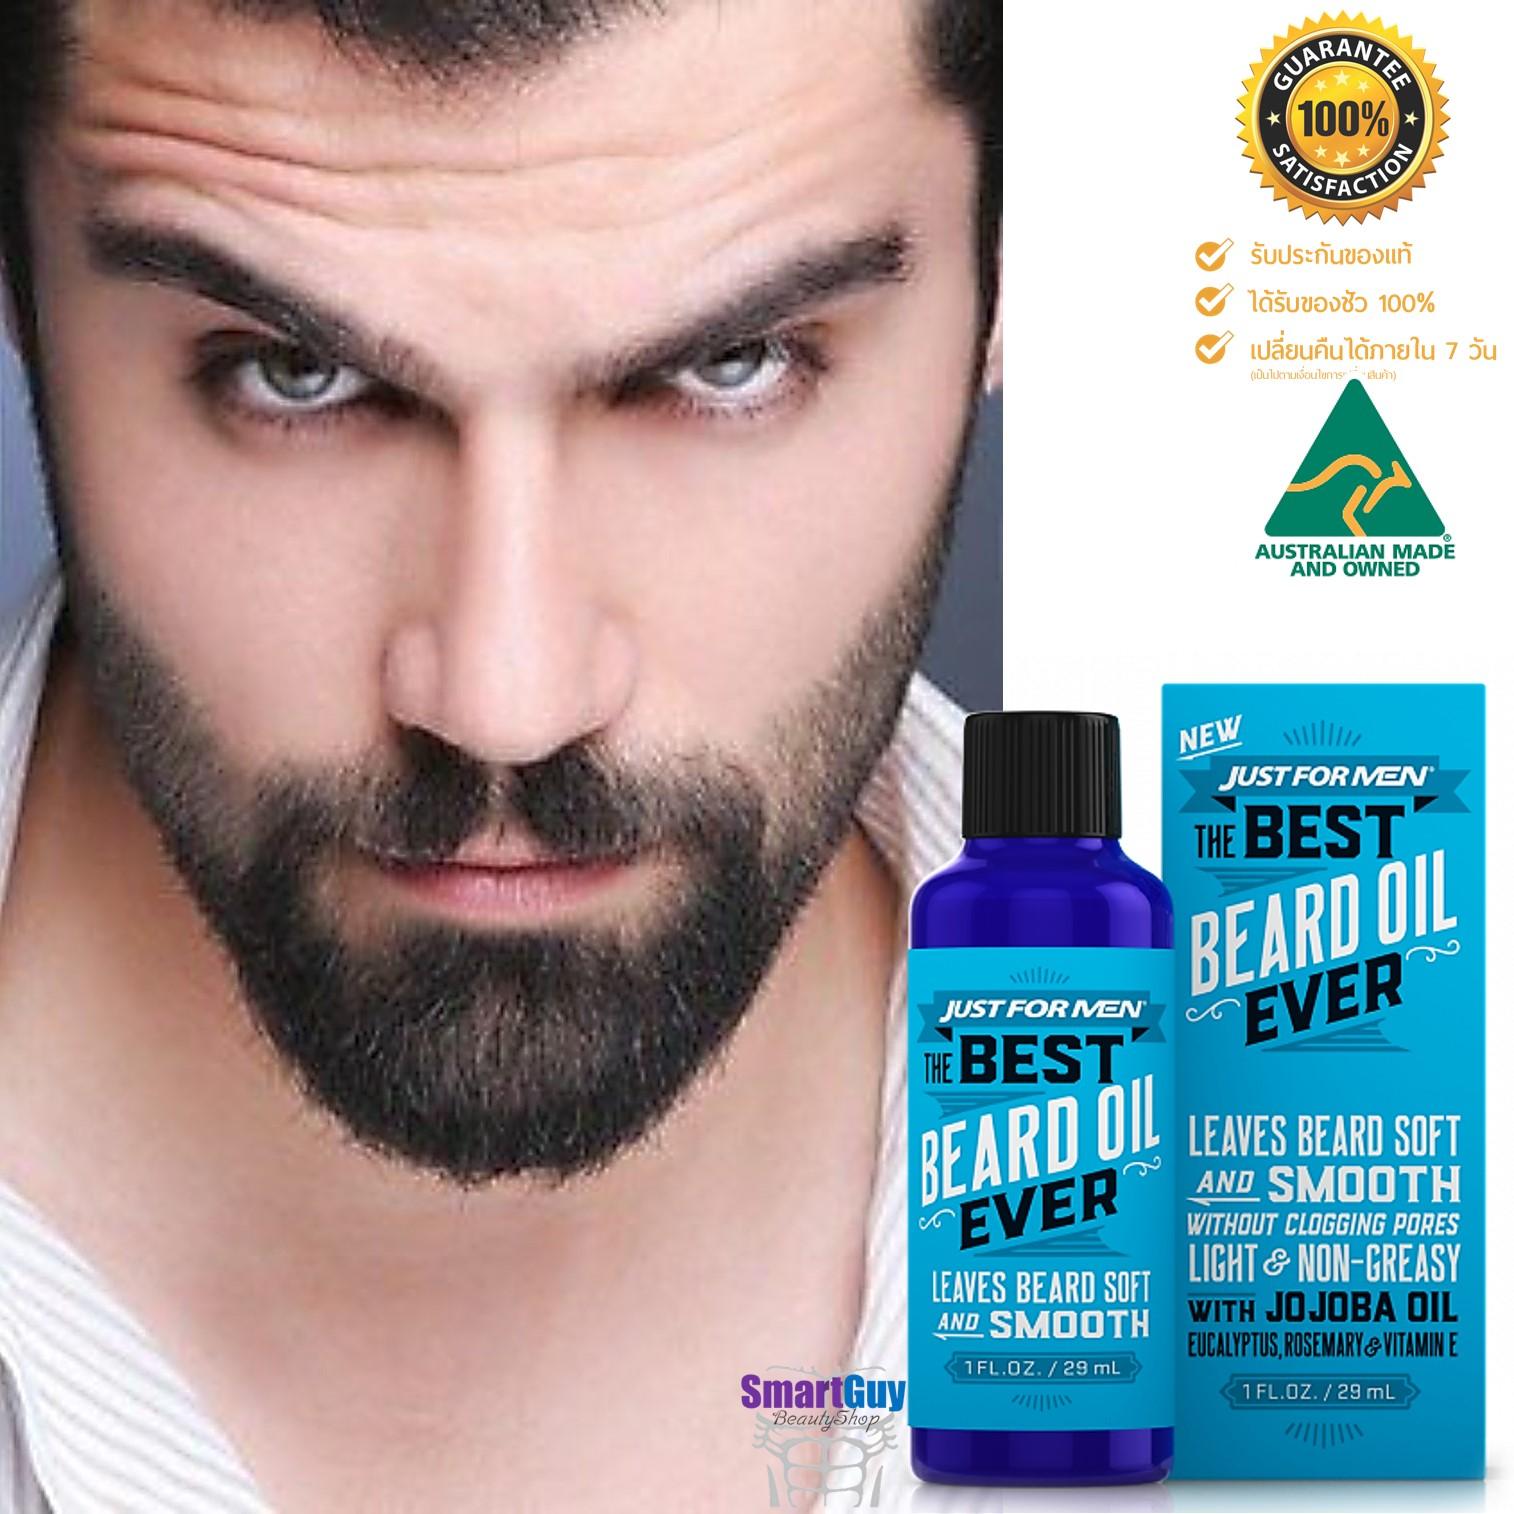 Just For Men Our Best Beard Oil Ever 30ml. ผลิตภัณฑ์บำรุง หนวด เครา จอน ให้แข็งแรงนุ่มลื่นเงางามเป็นธรรมชาติ สินค้านำเข้าของแท้จากประเทศออสเตรเลีย